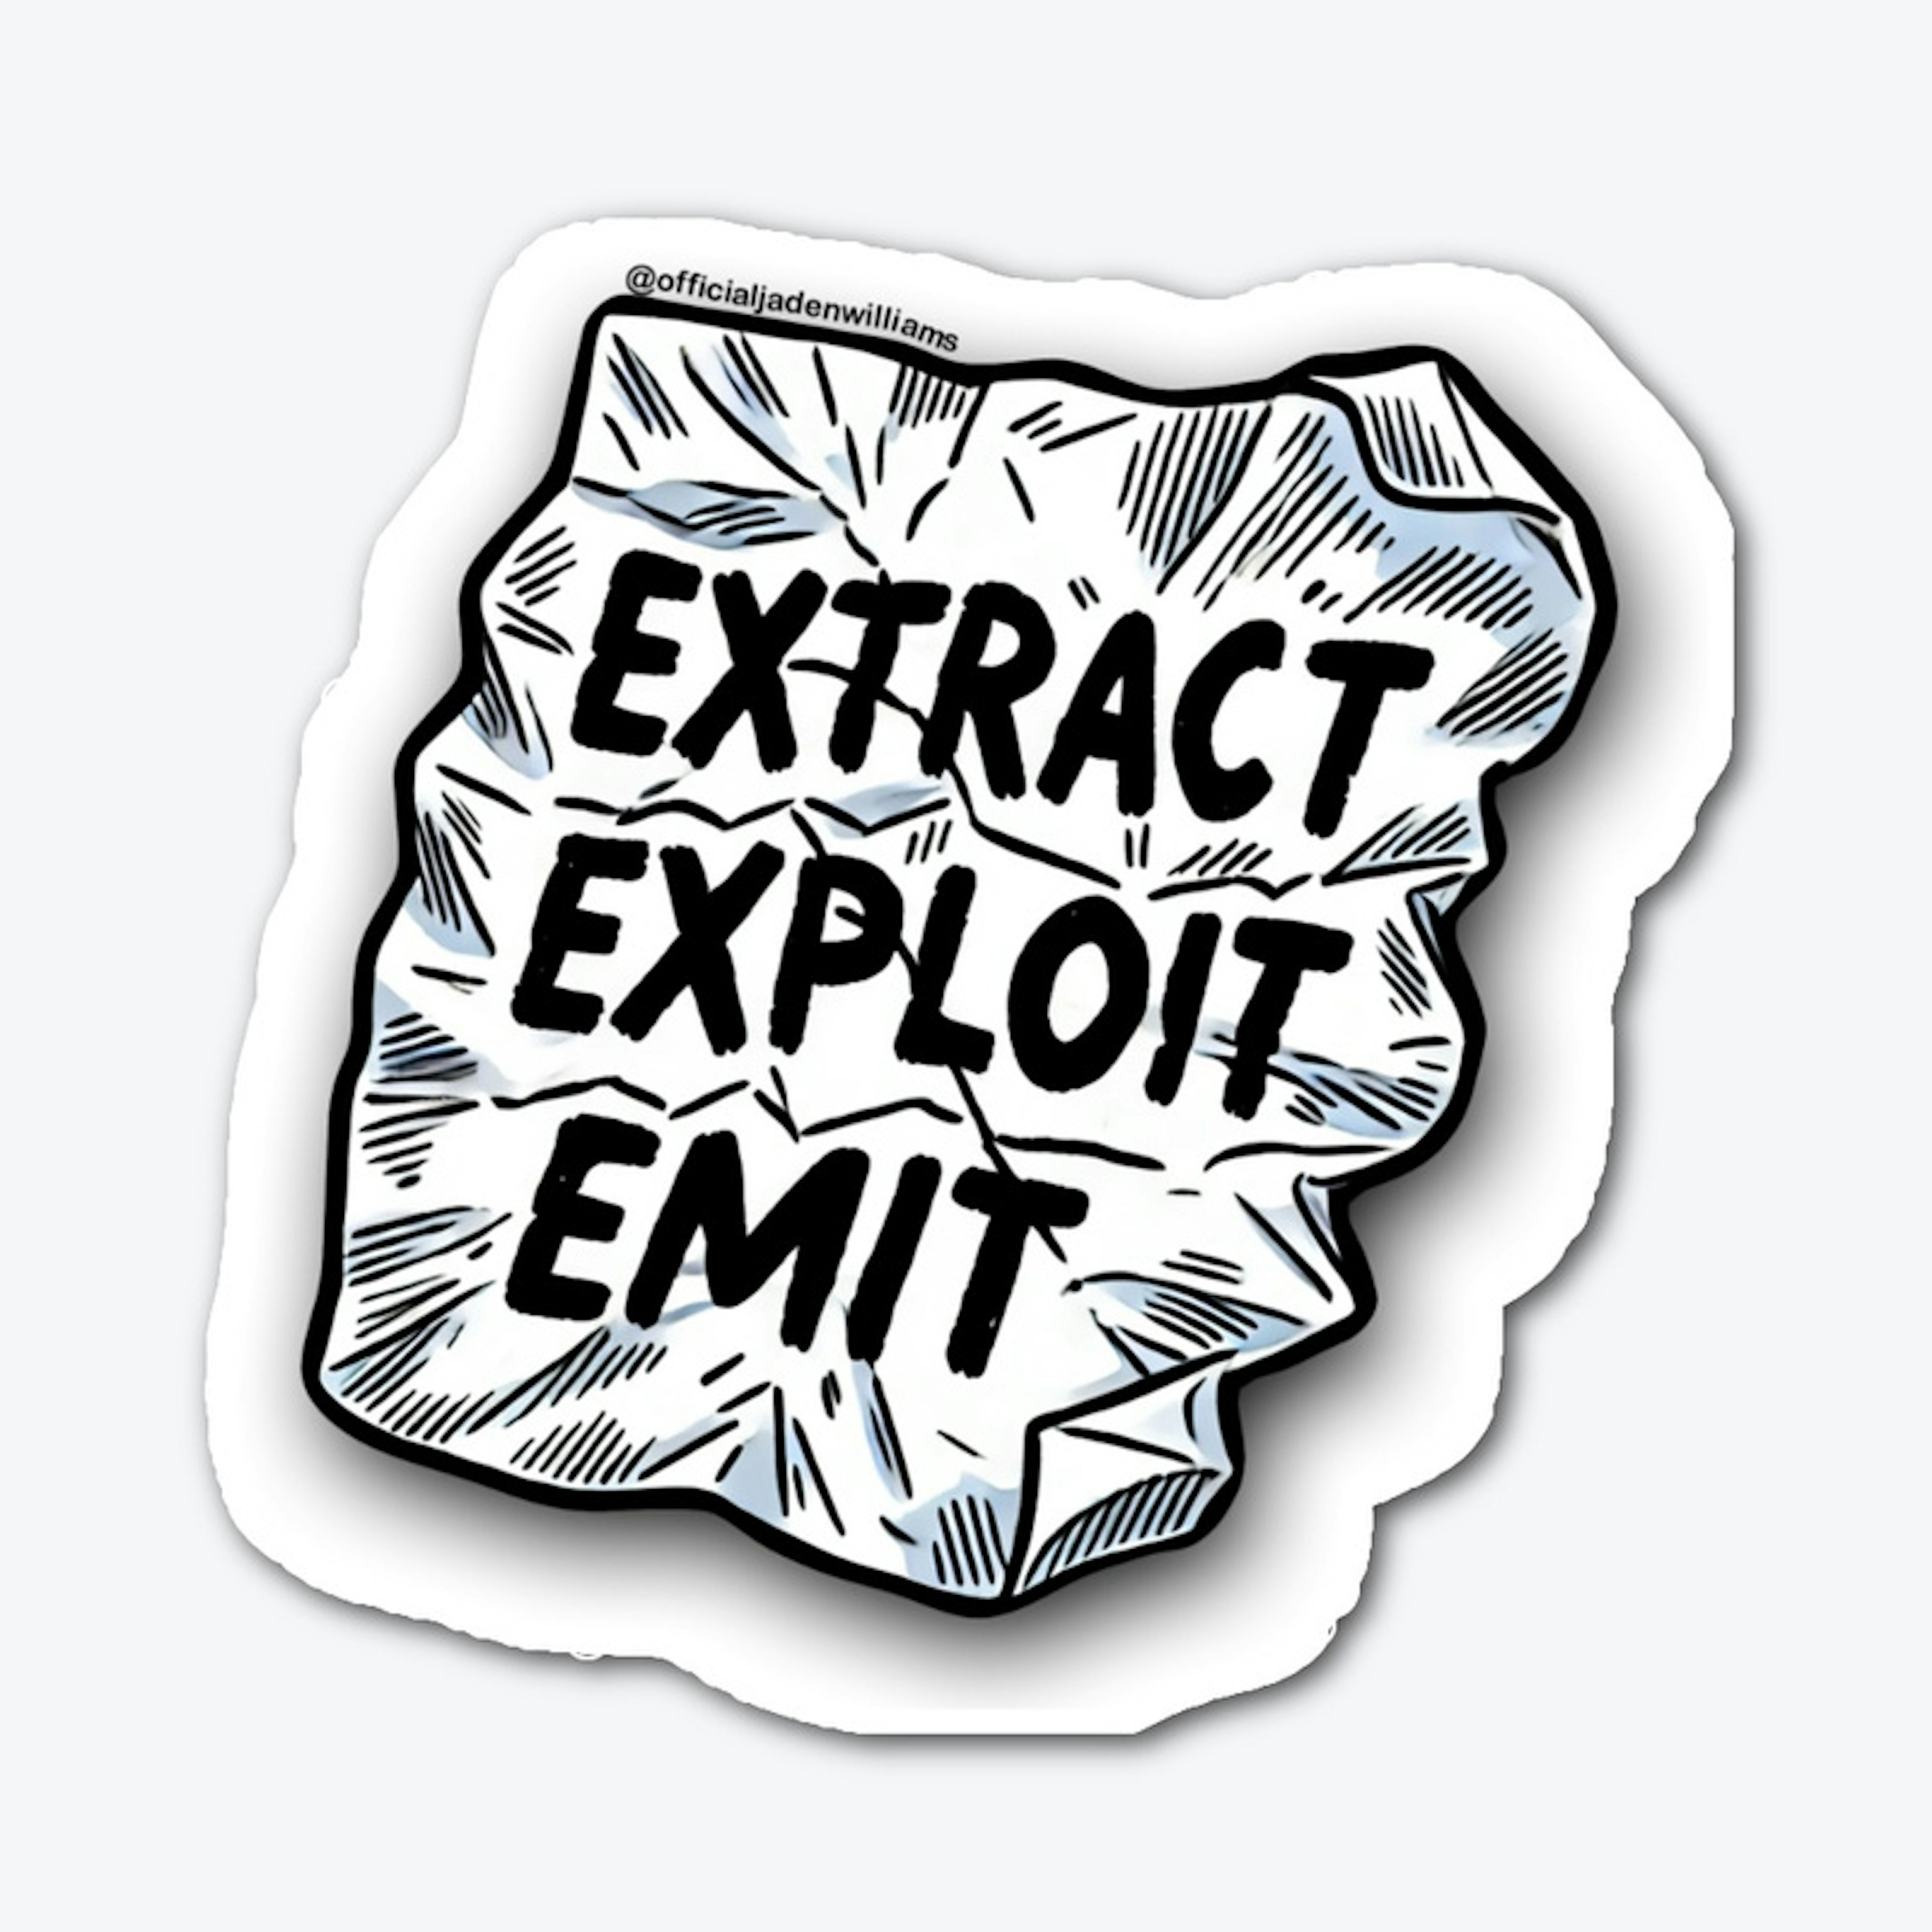 Extract, Exploit, Emit